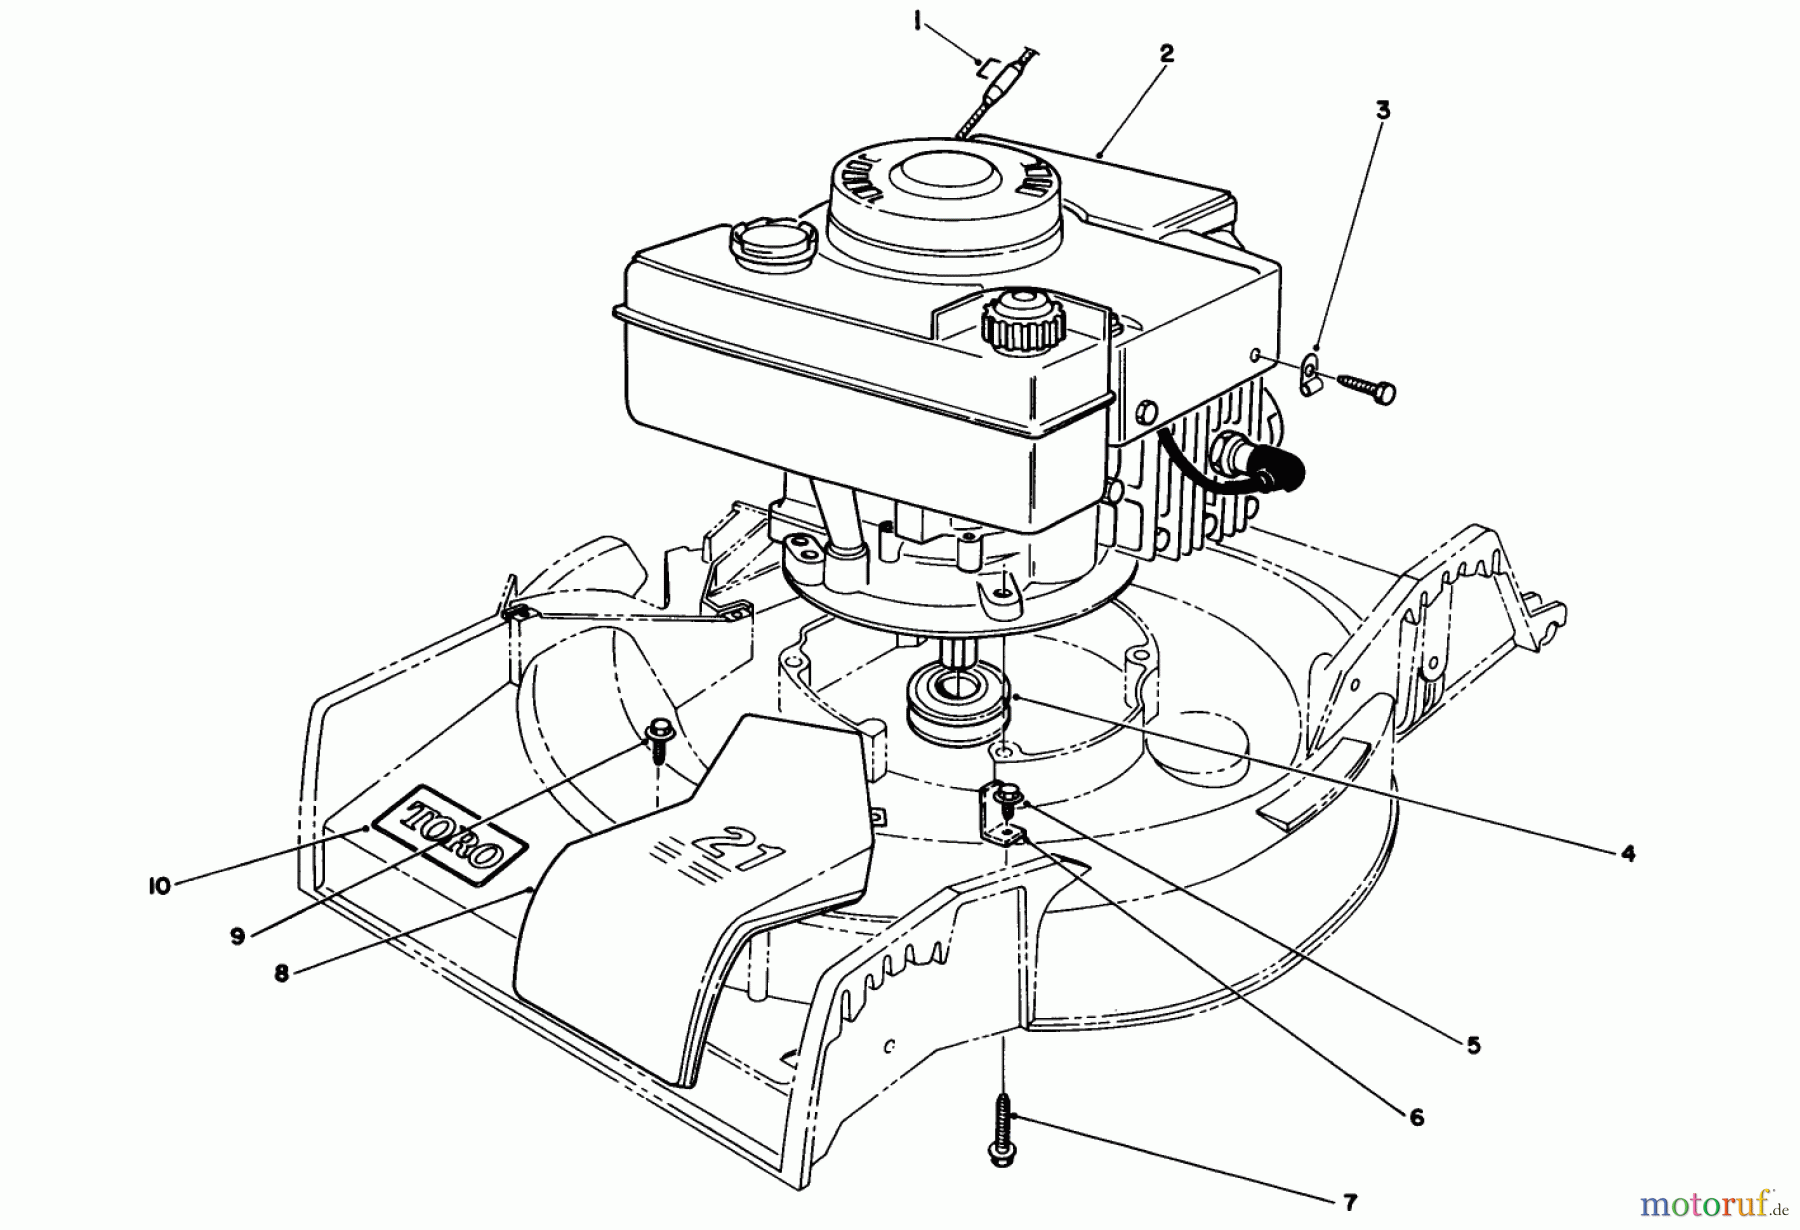  Toro Neu Mowers, Walk-Behind Seite 1 16775 - Toro Lawnmower, 1989 (9000001-9999999) ENGINE ASSEMBLY